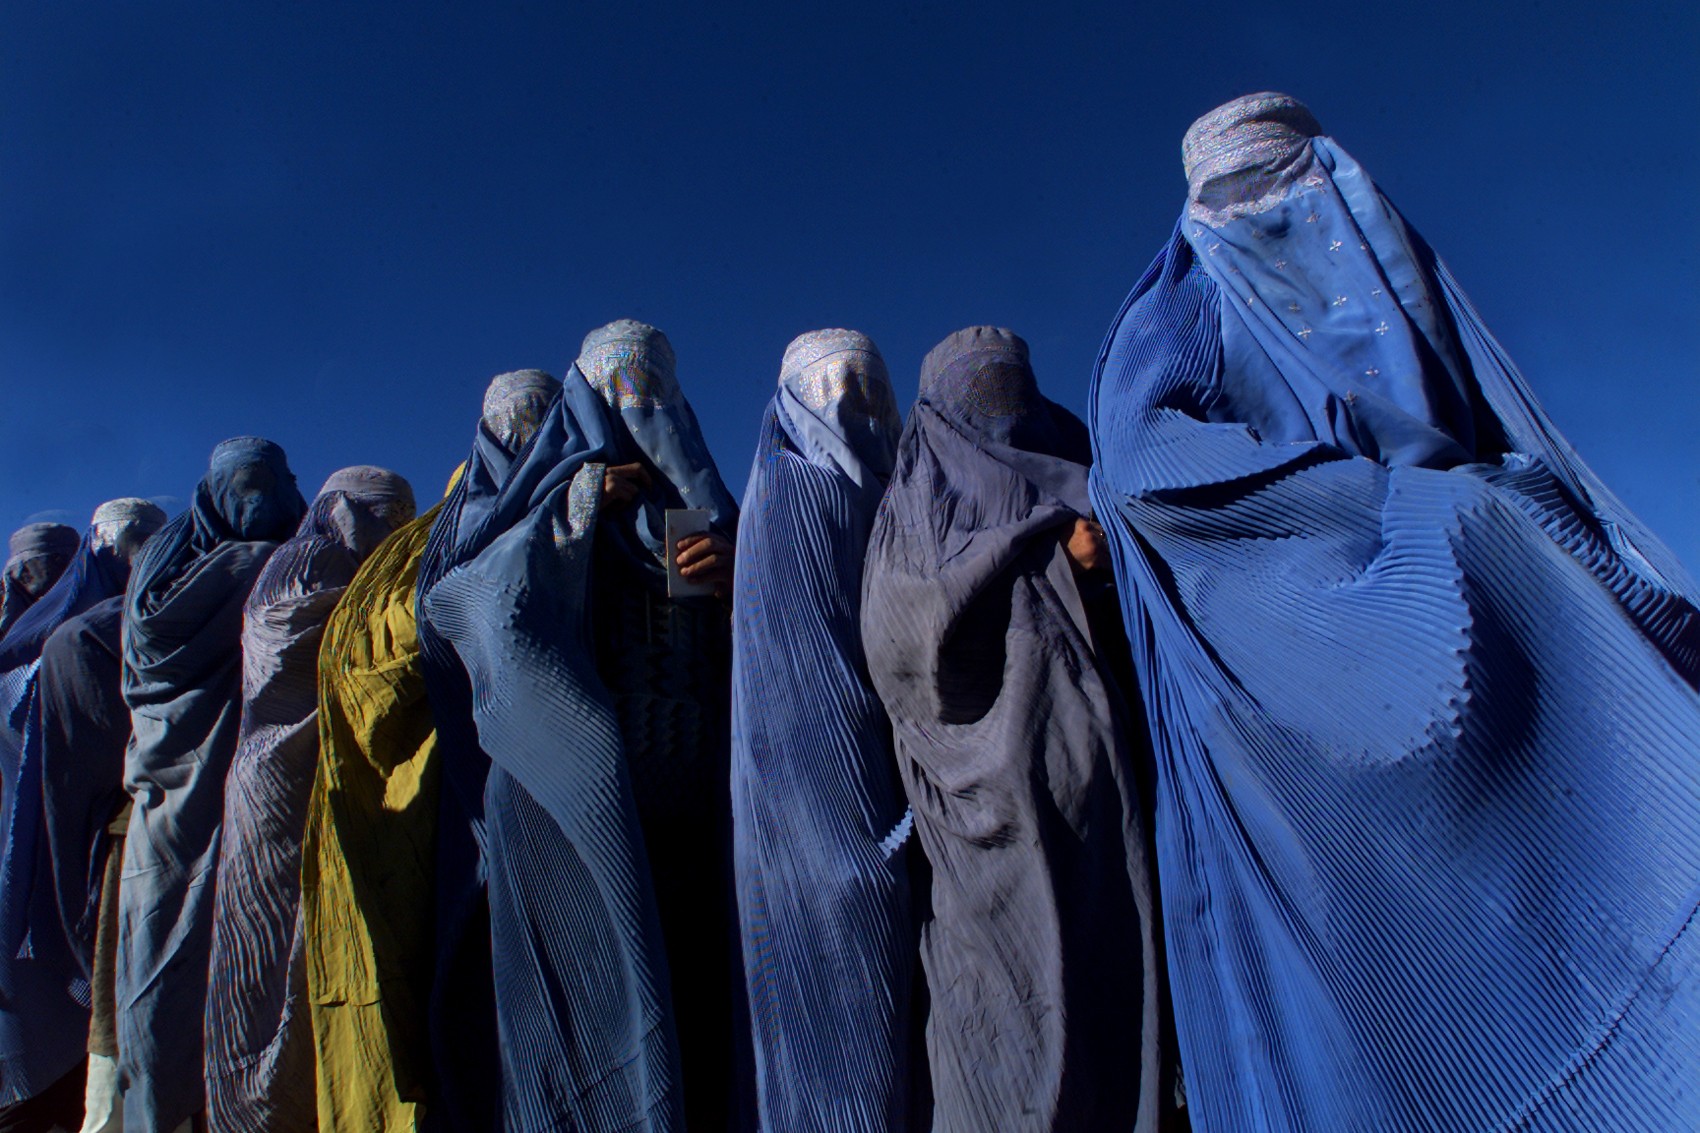 Mulheres de burca, veste usada por membros das Forças Especiais inglesas para escapar dos Talibãs (Foto: getty)